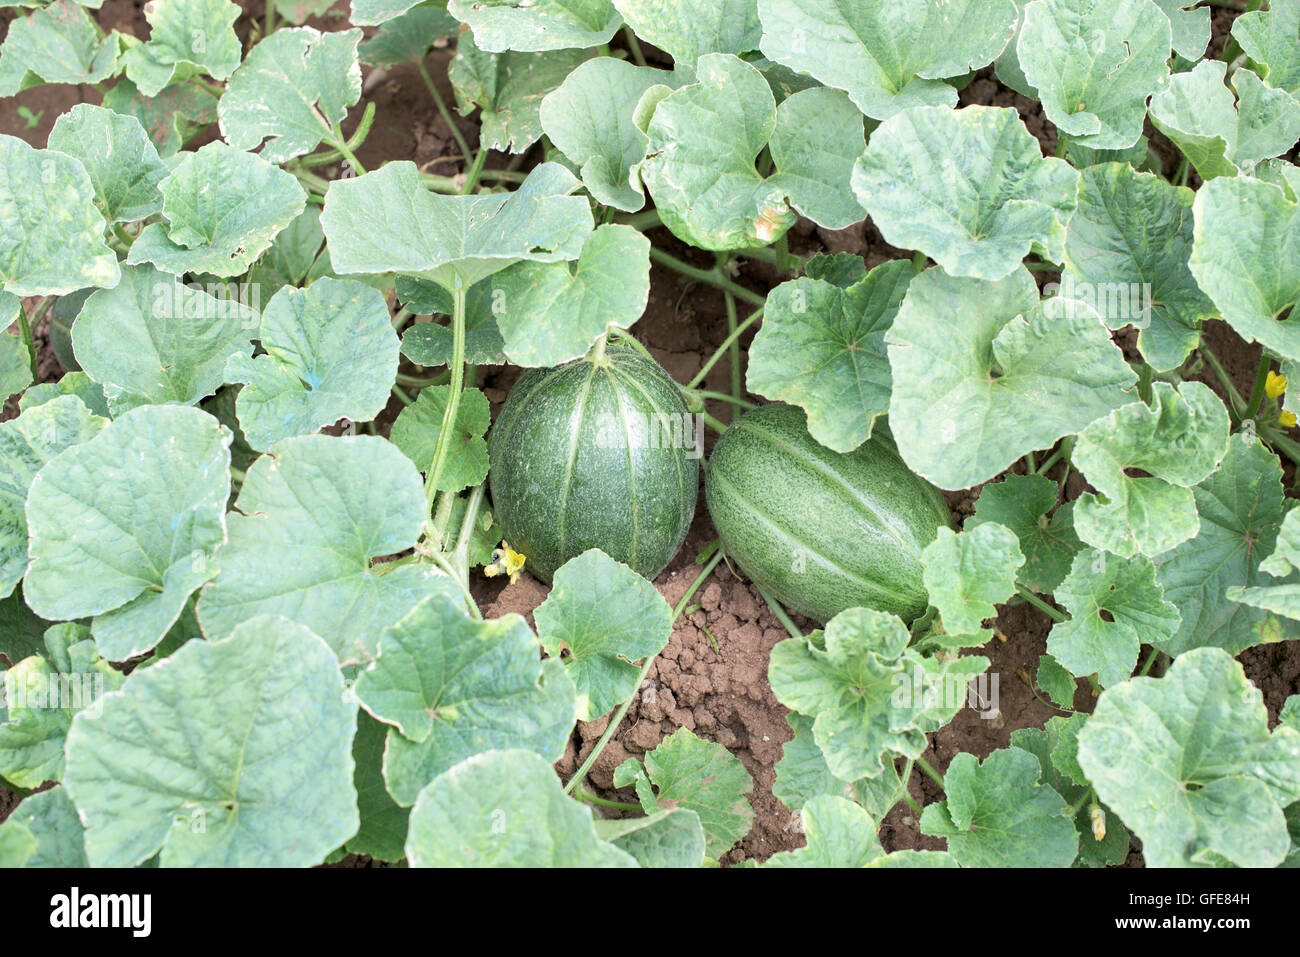 Teil der Melone Pflanze mit Ernte und Blüten Stockfotografie - Alamy